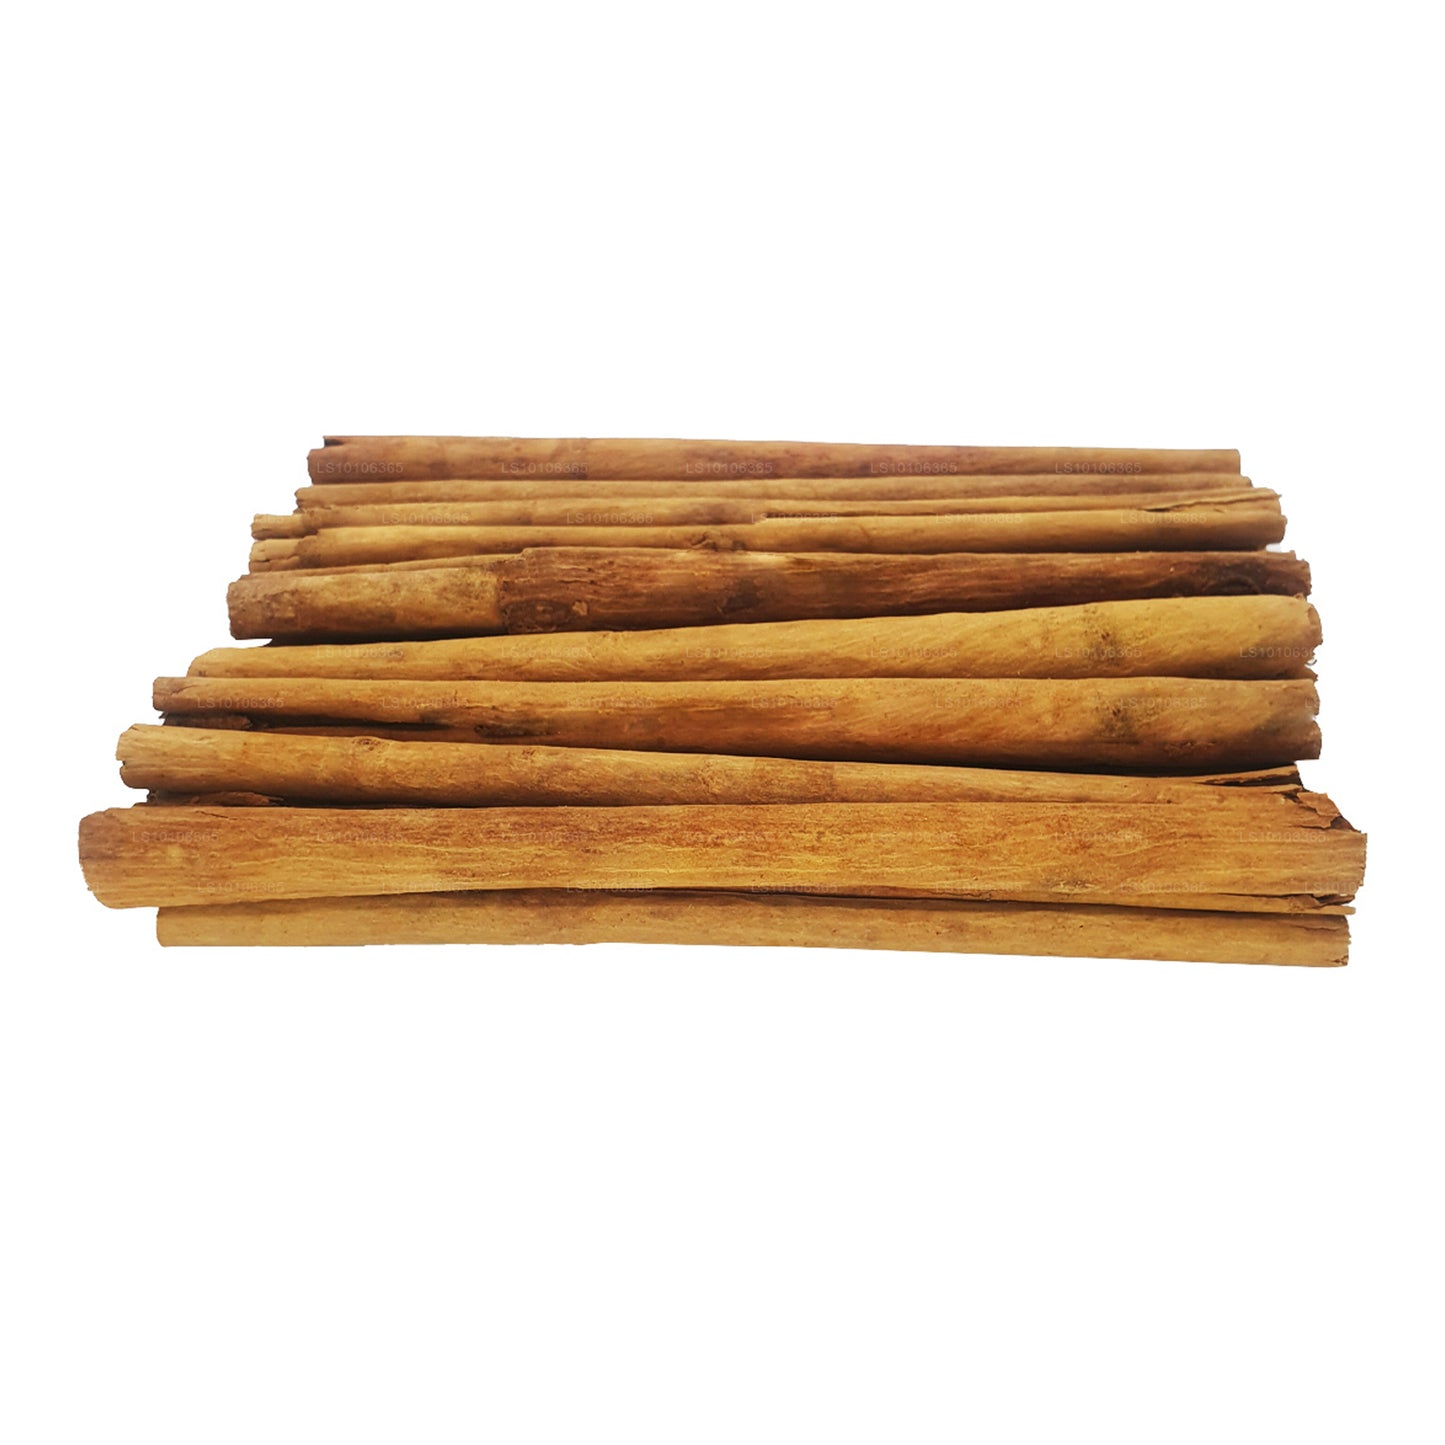 Lakpura ”C5" Grade Ceylon Sann Kanel Barks Pack